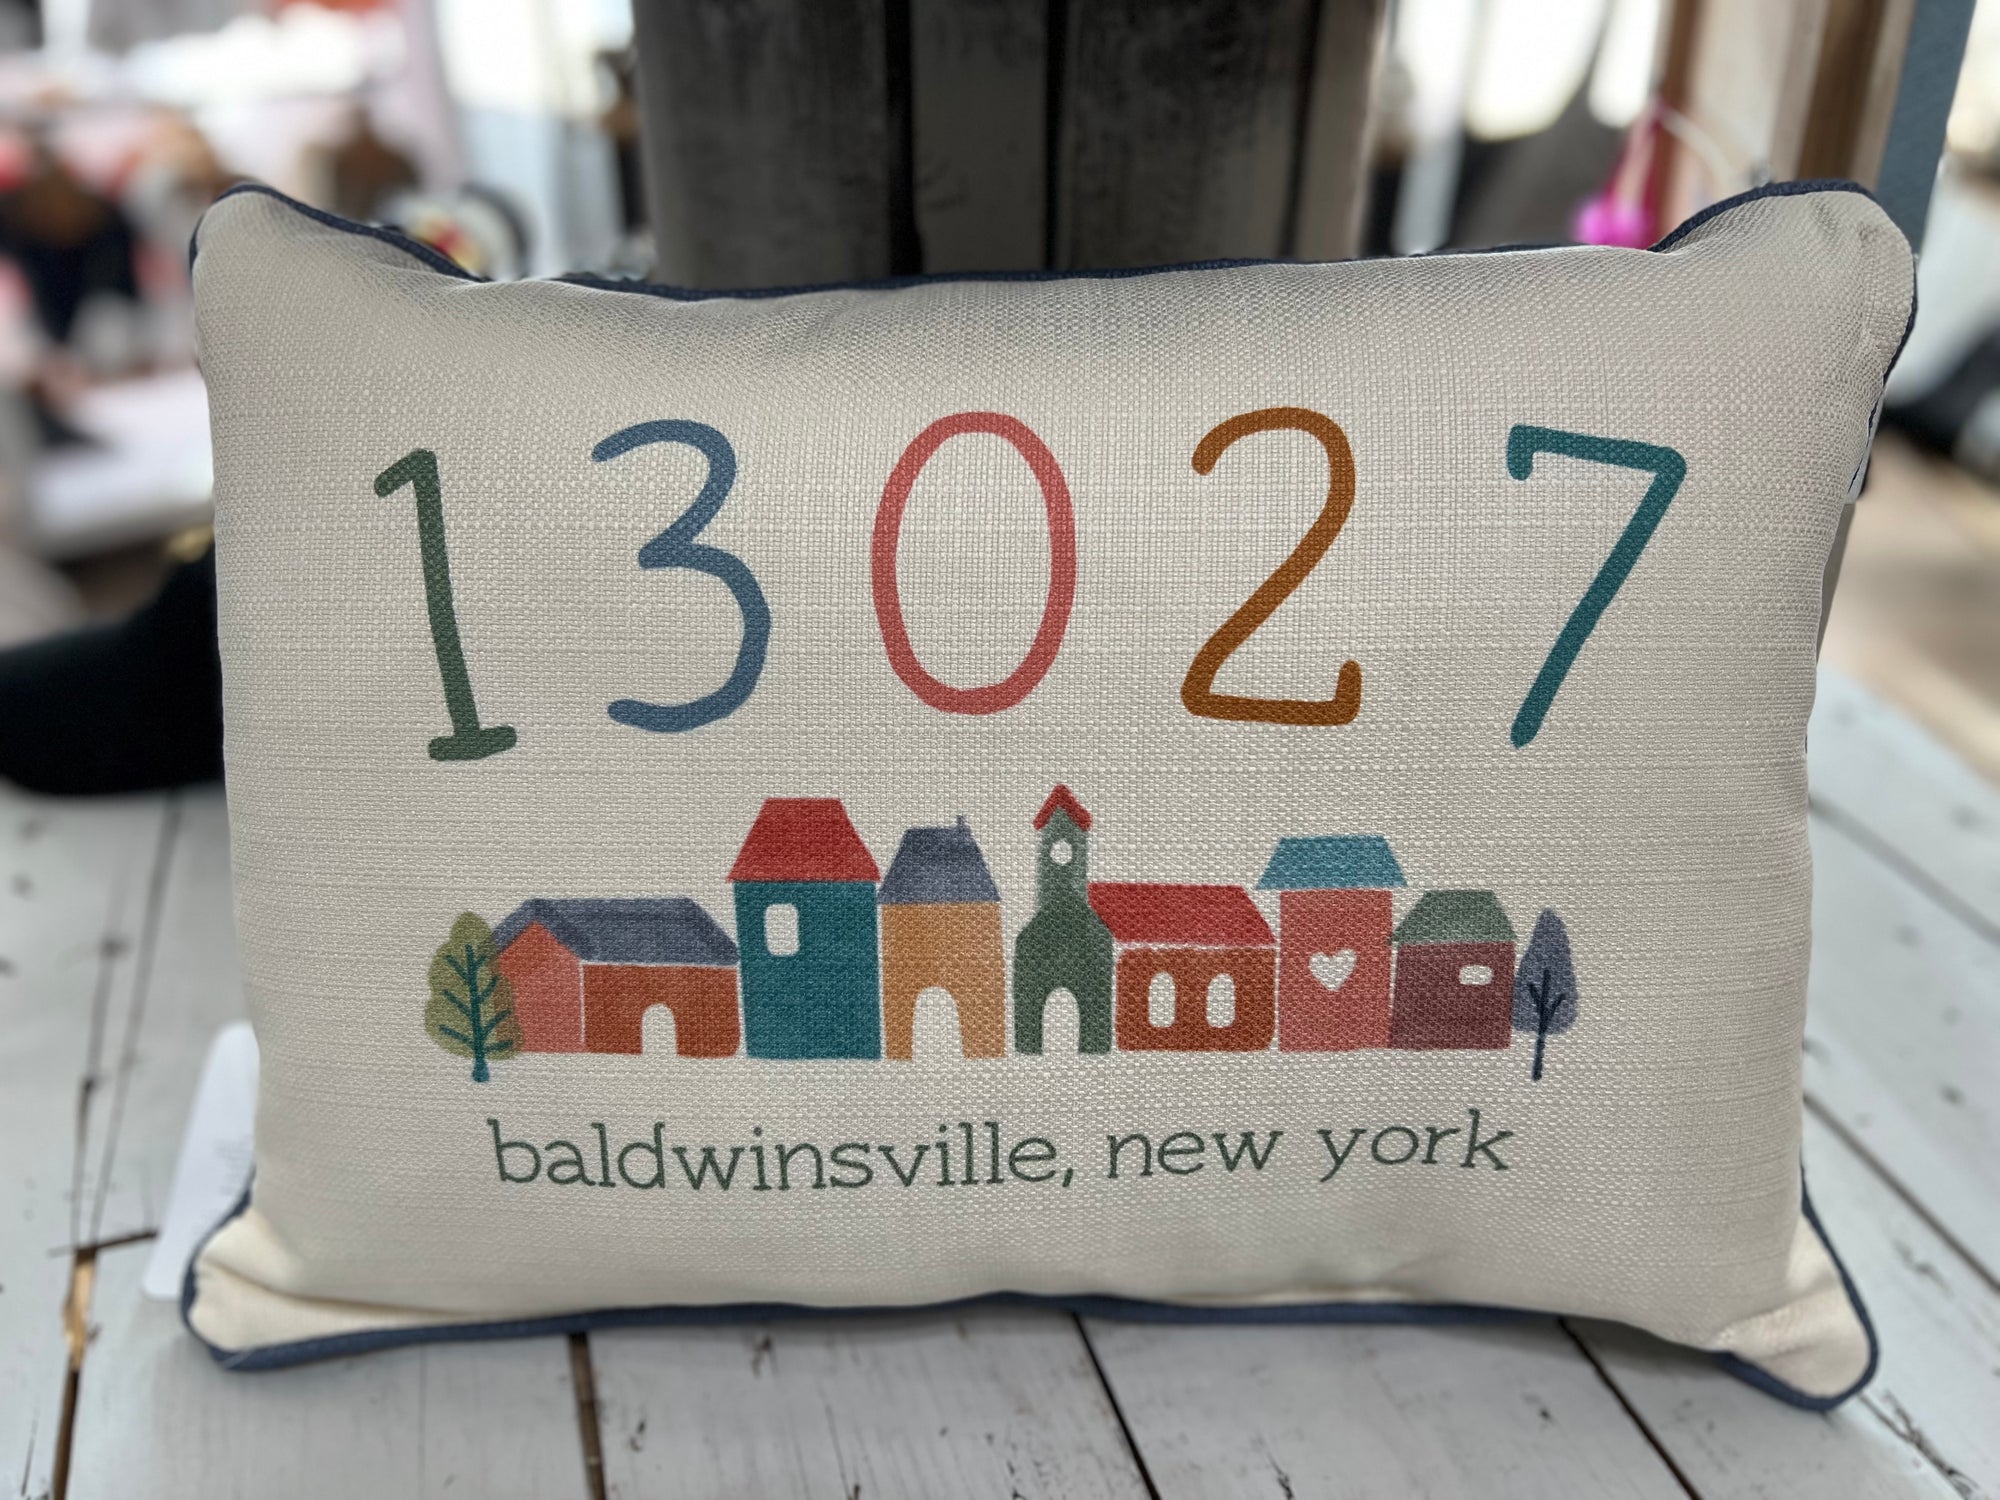 Baldwinsville 13027 Pillow